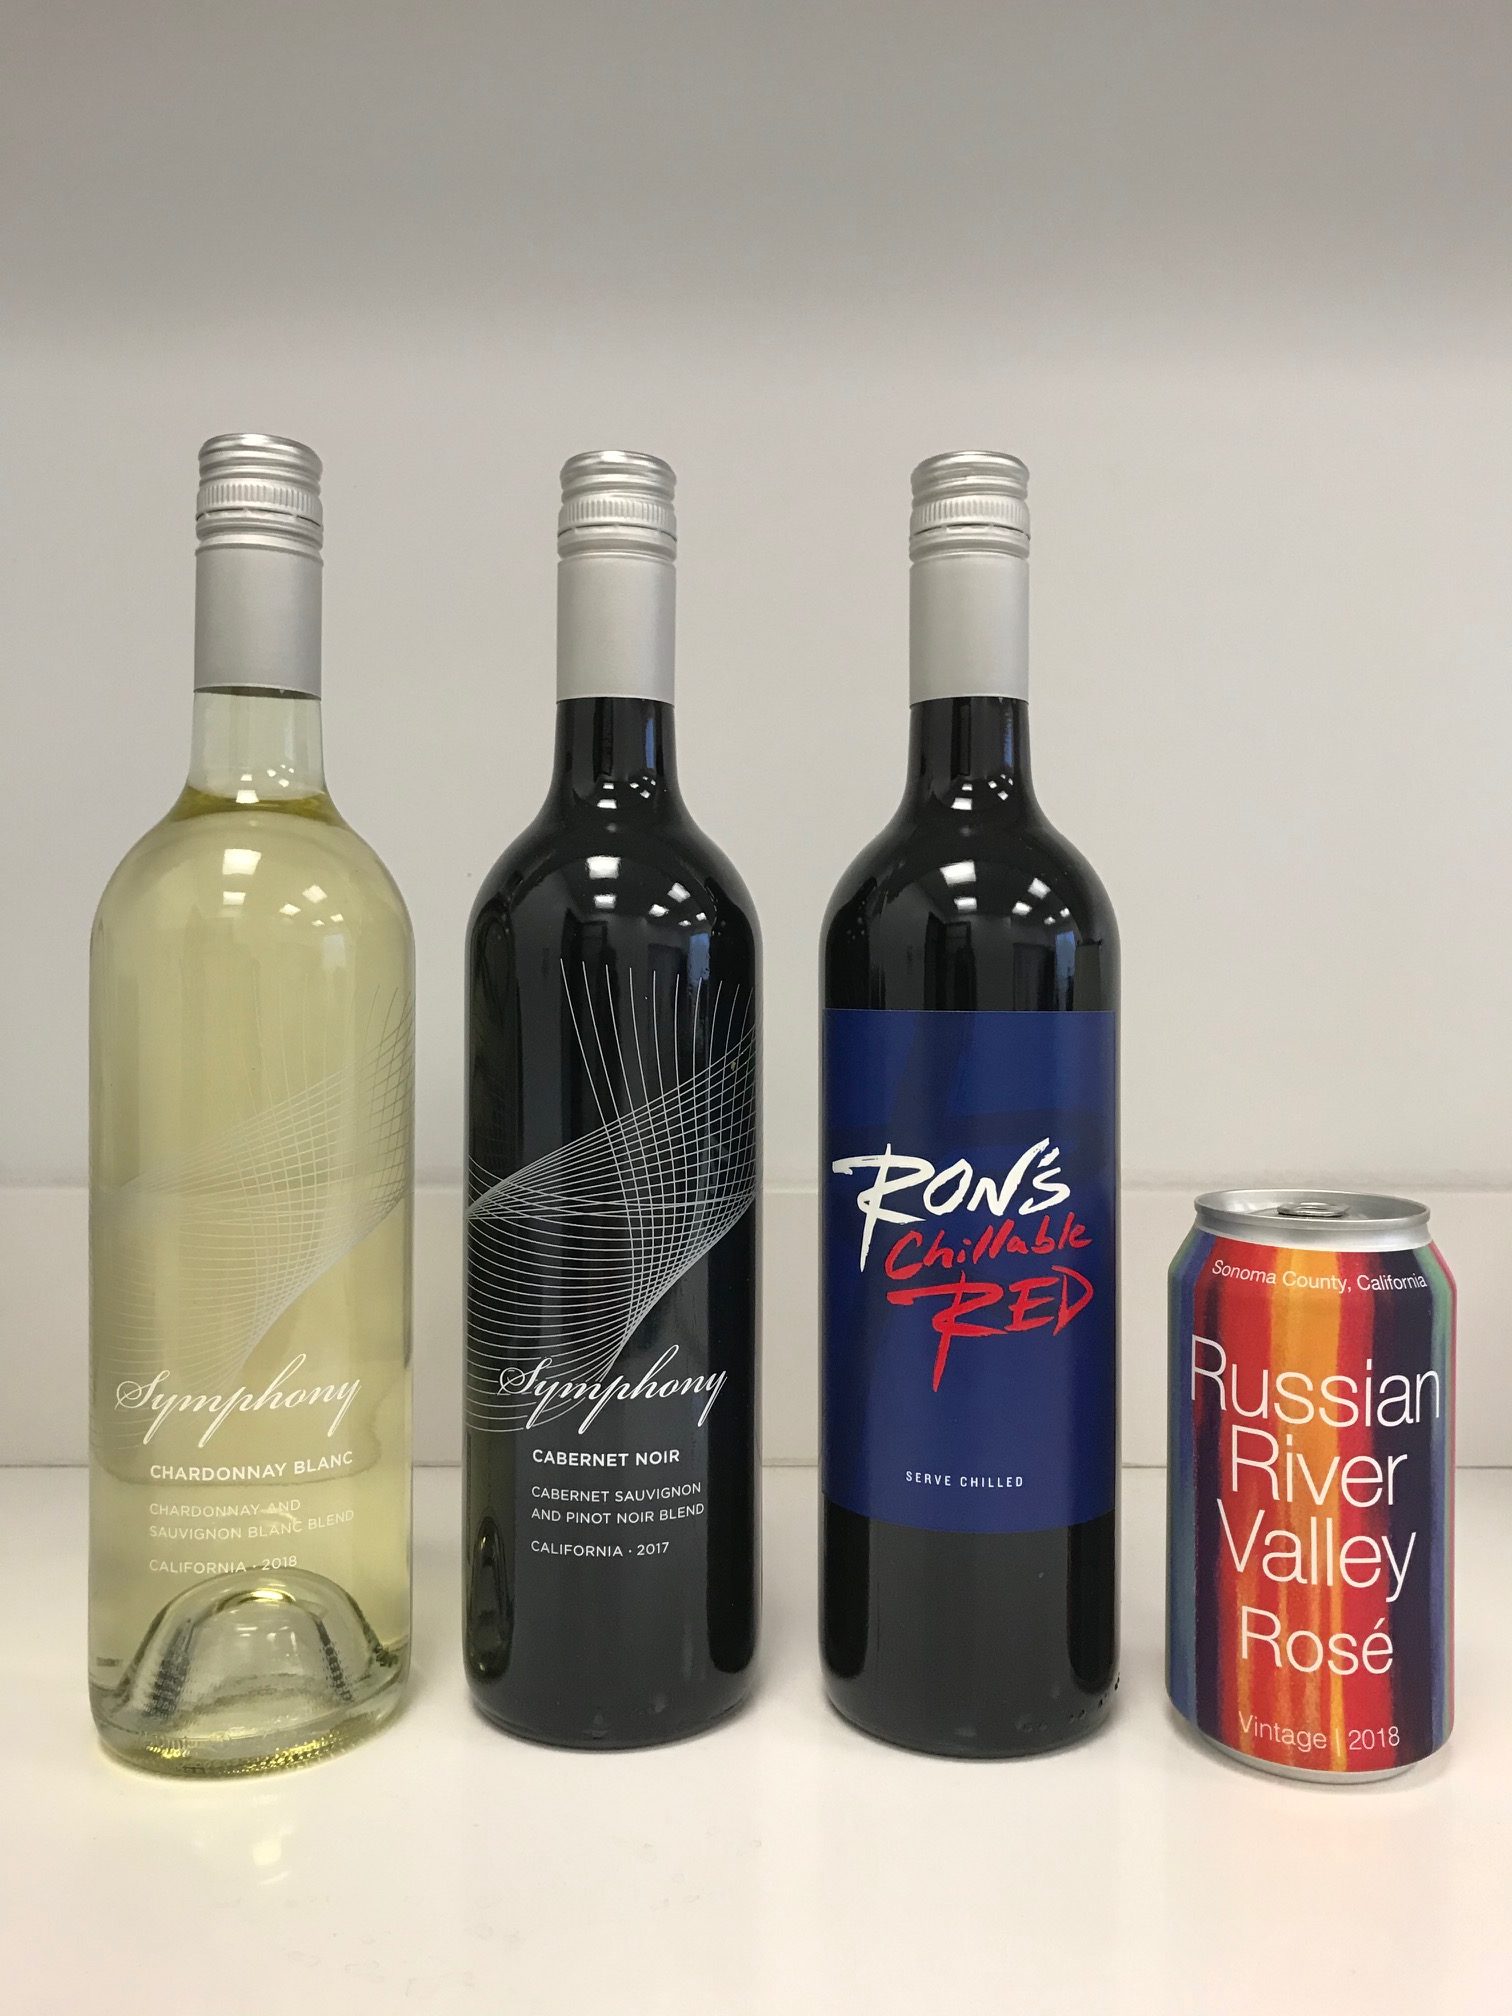 2019 Wine Innovations